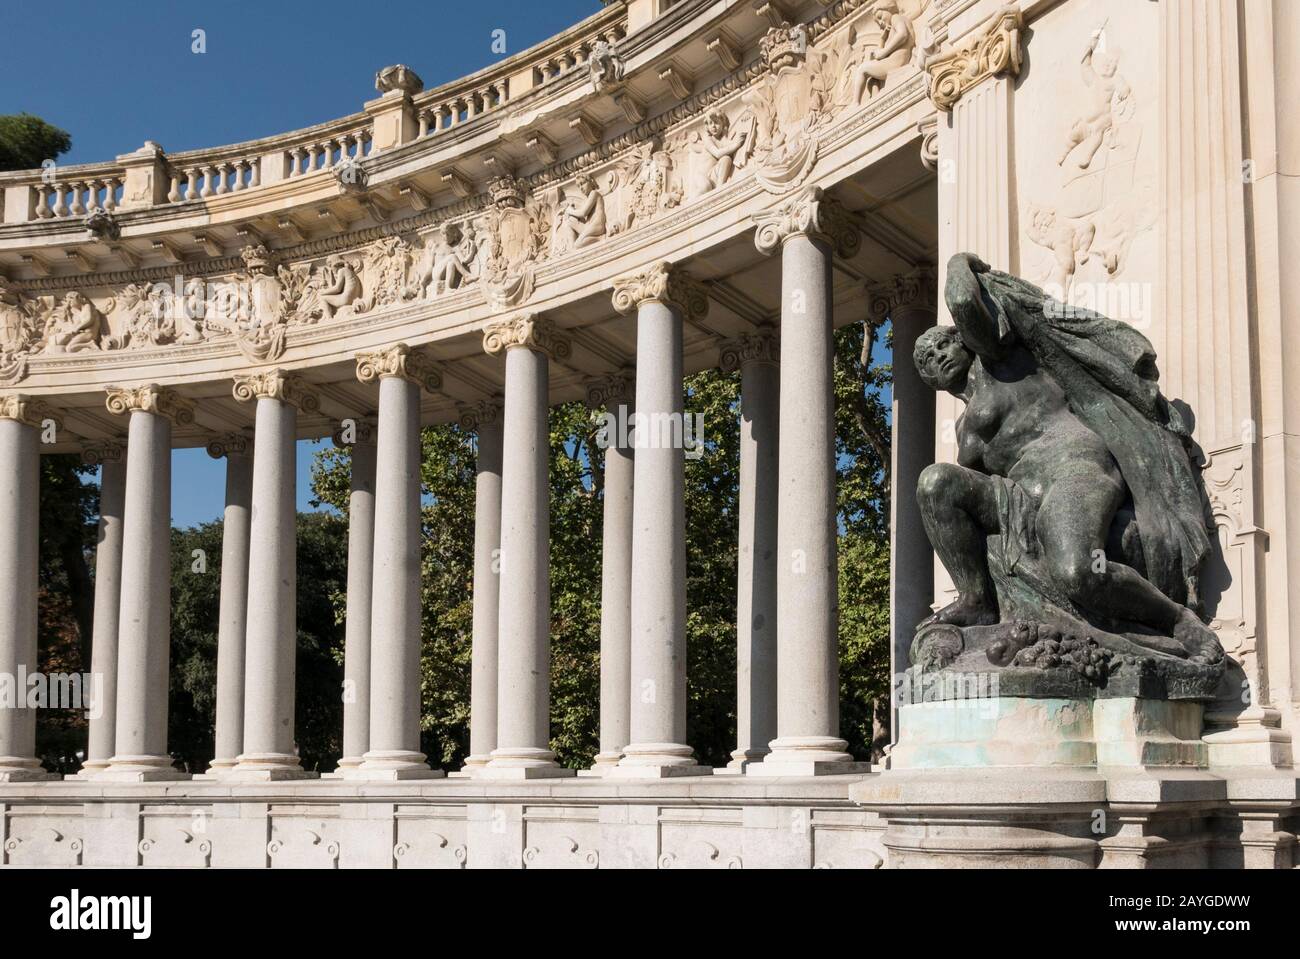 Una estatua frente a la Colonnade en el monumento Alonso XII en el Parque del Retiro, Madrid, España Foto de stock